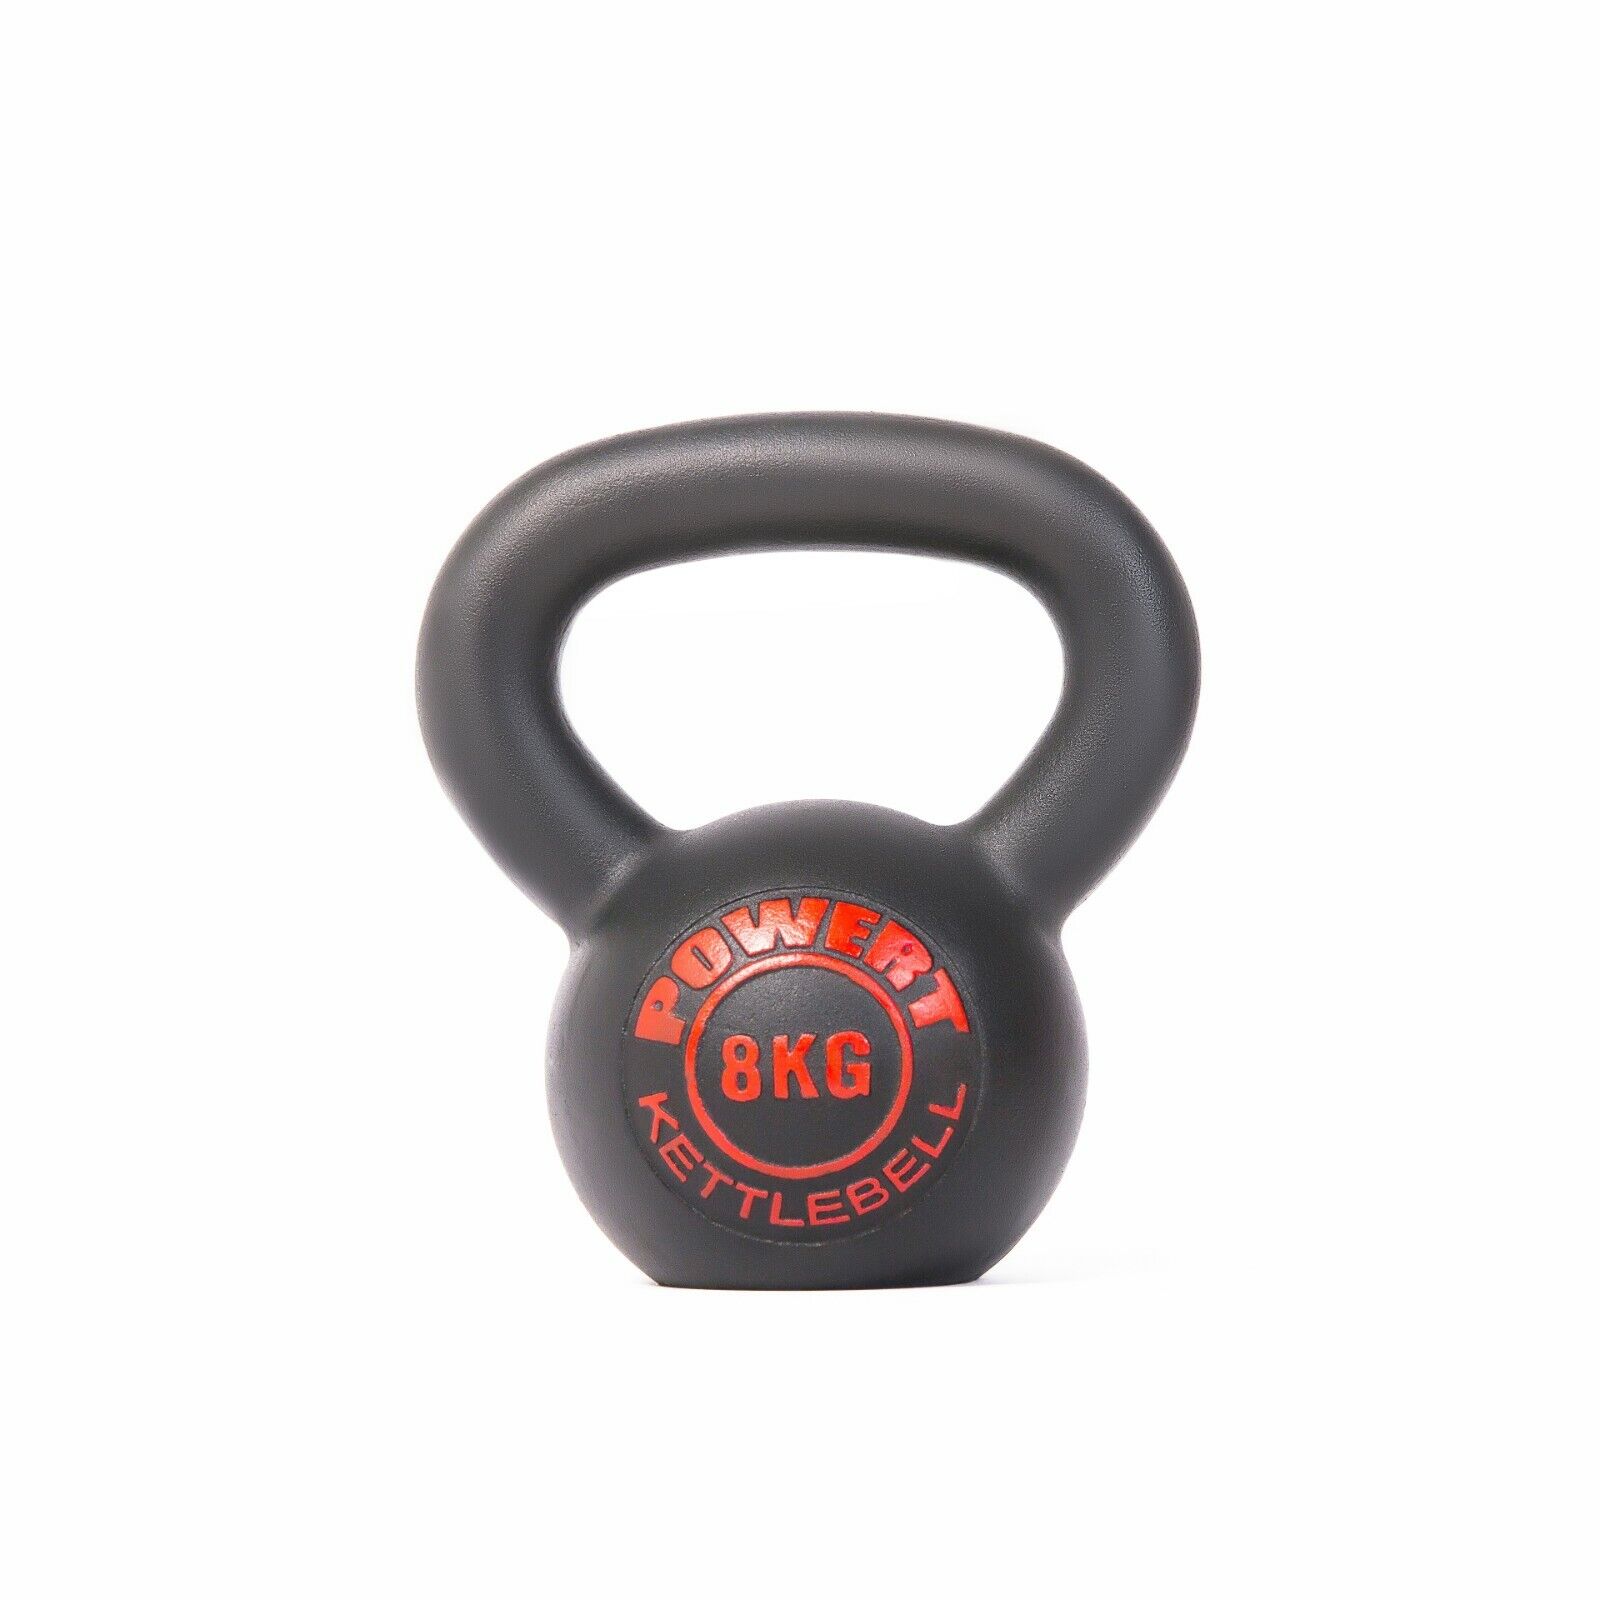 POWERT Cast Iron Kettlebell Weight Lifting Strength Training LB & KG